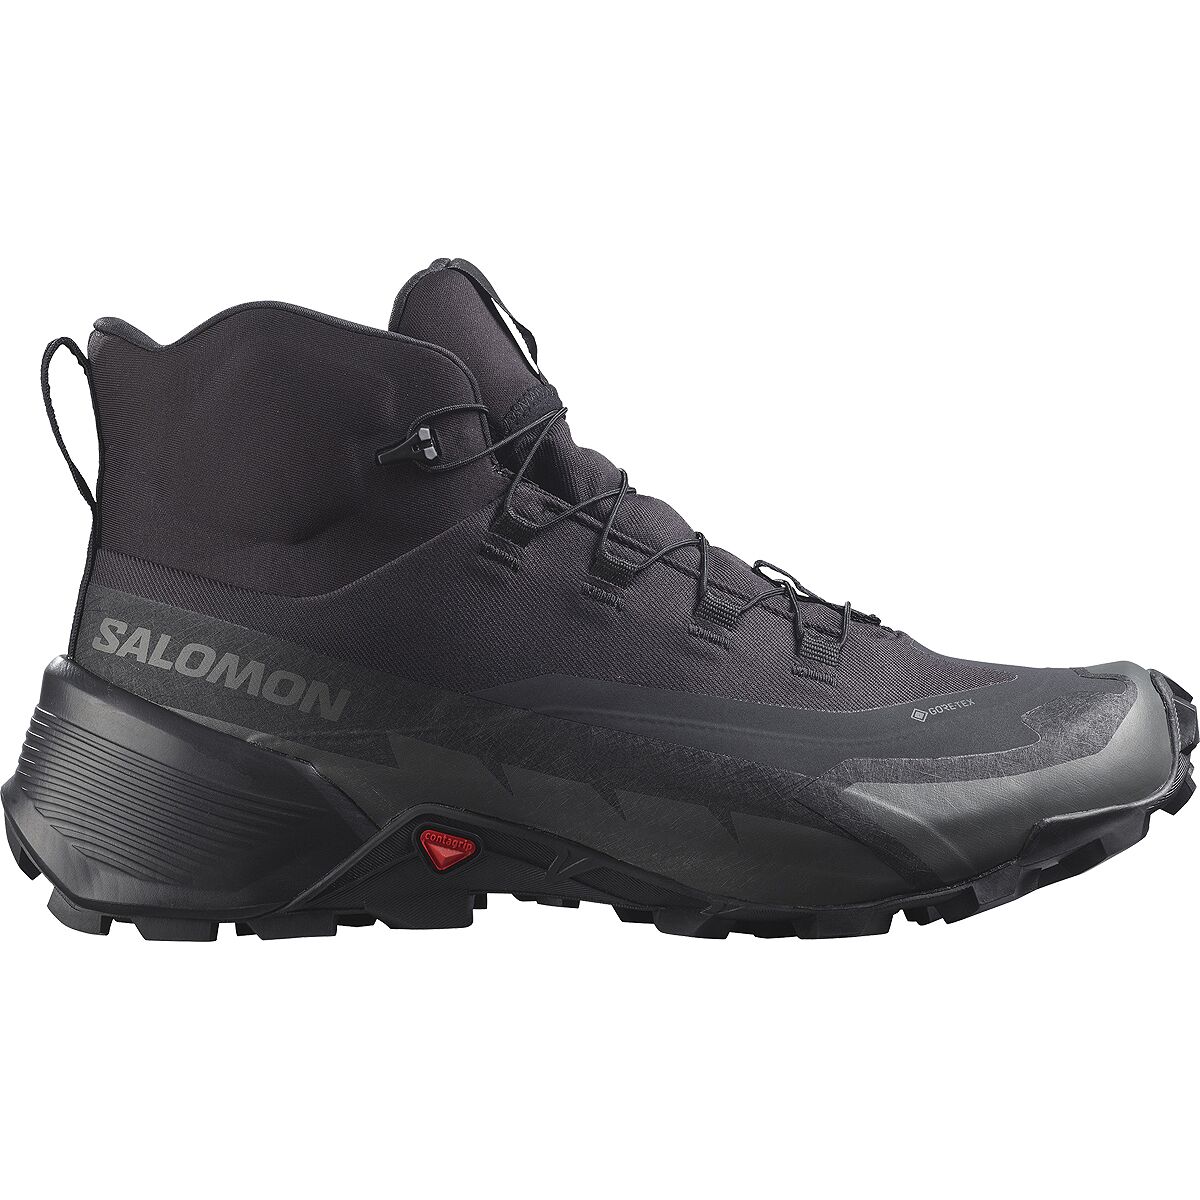 Salomon Cross Hike 2 Mid GTX Boot - Men's Black/Black/Magnet US 10.5/UK 10.0